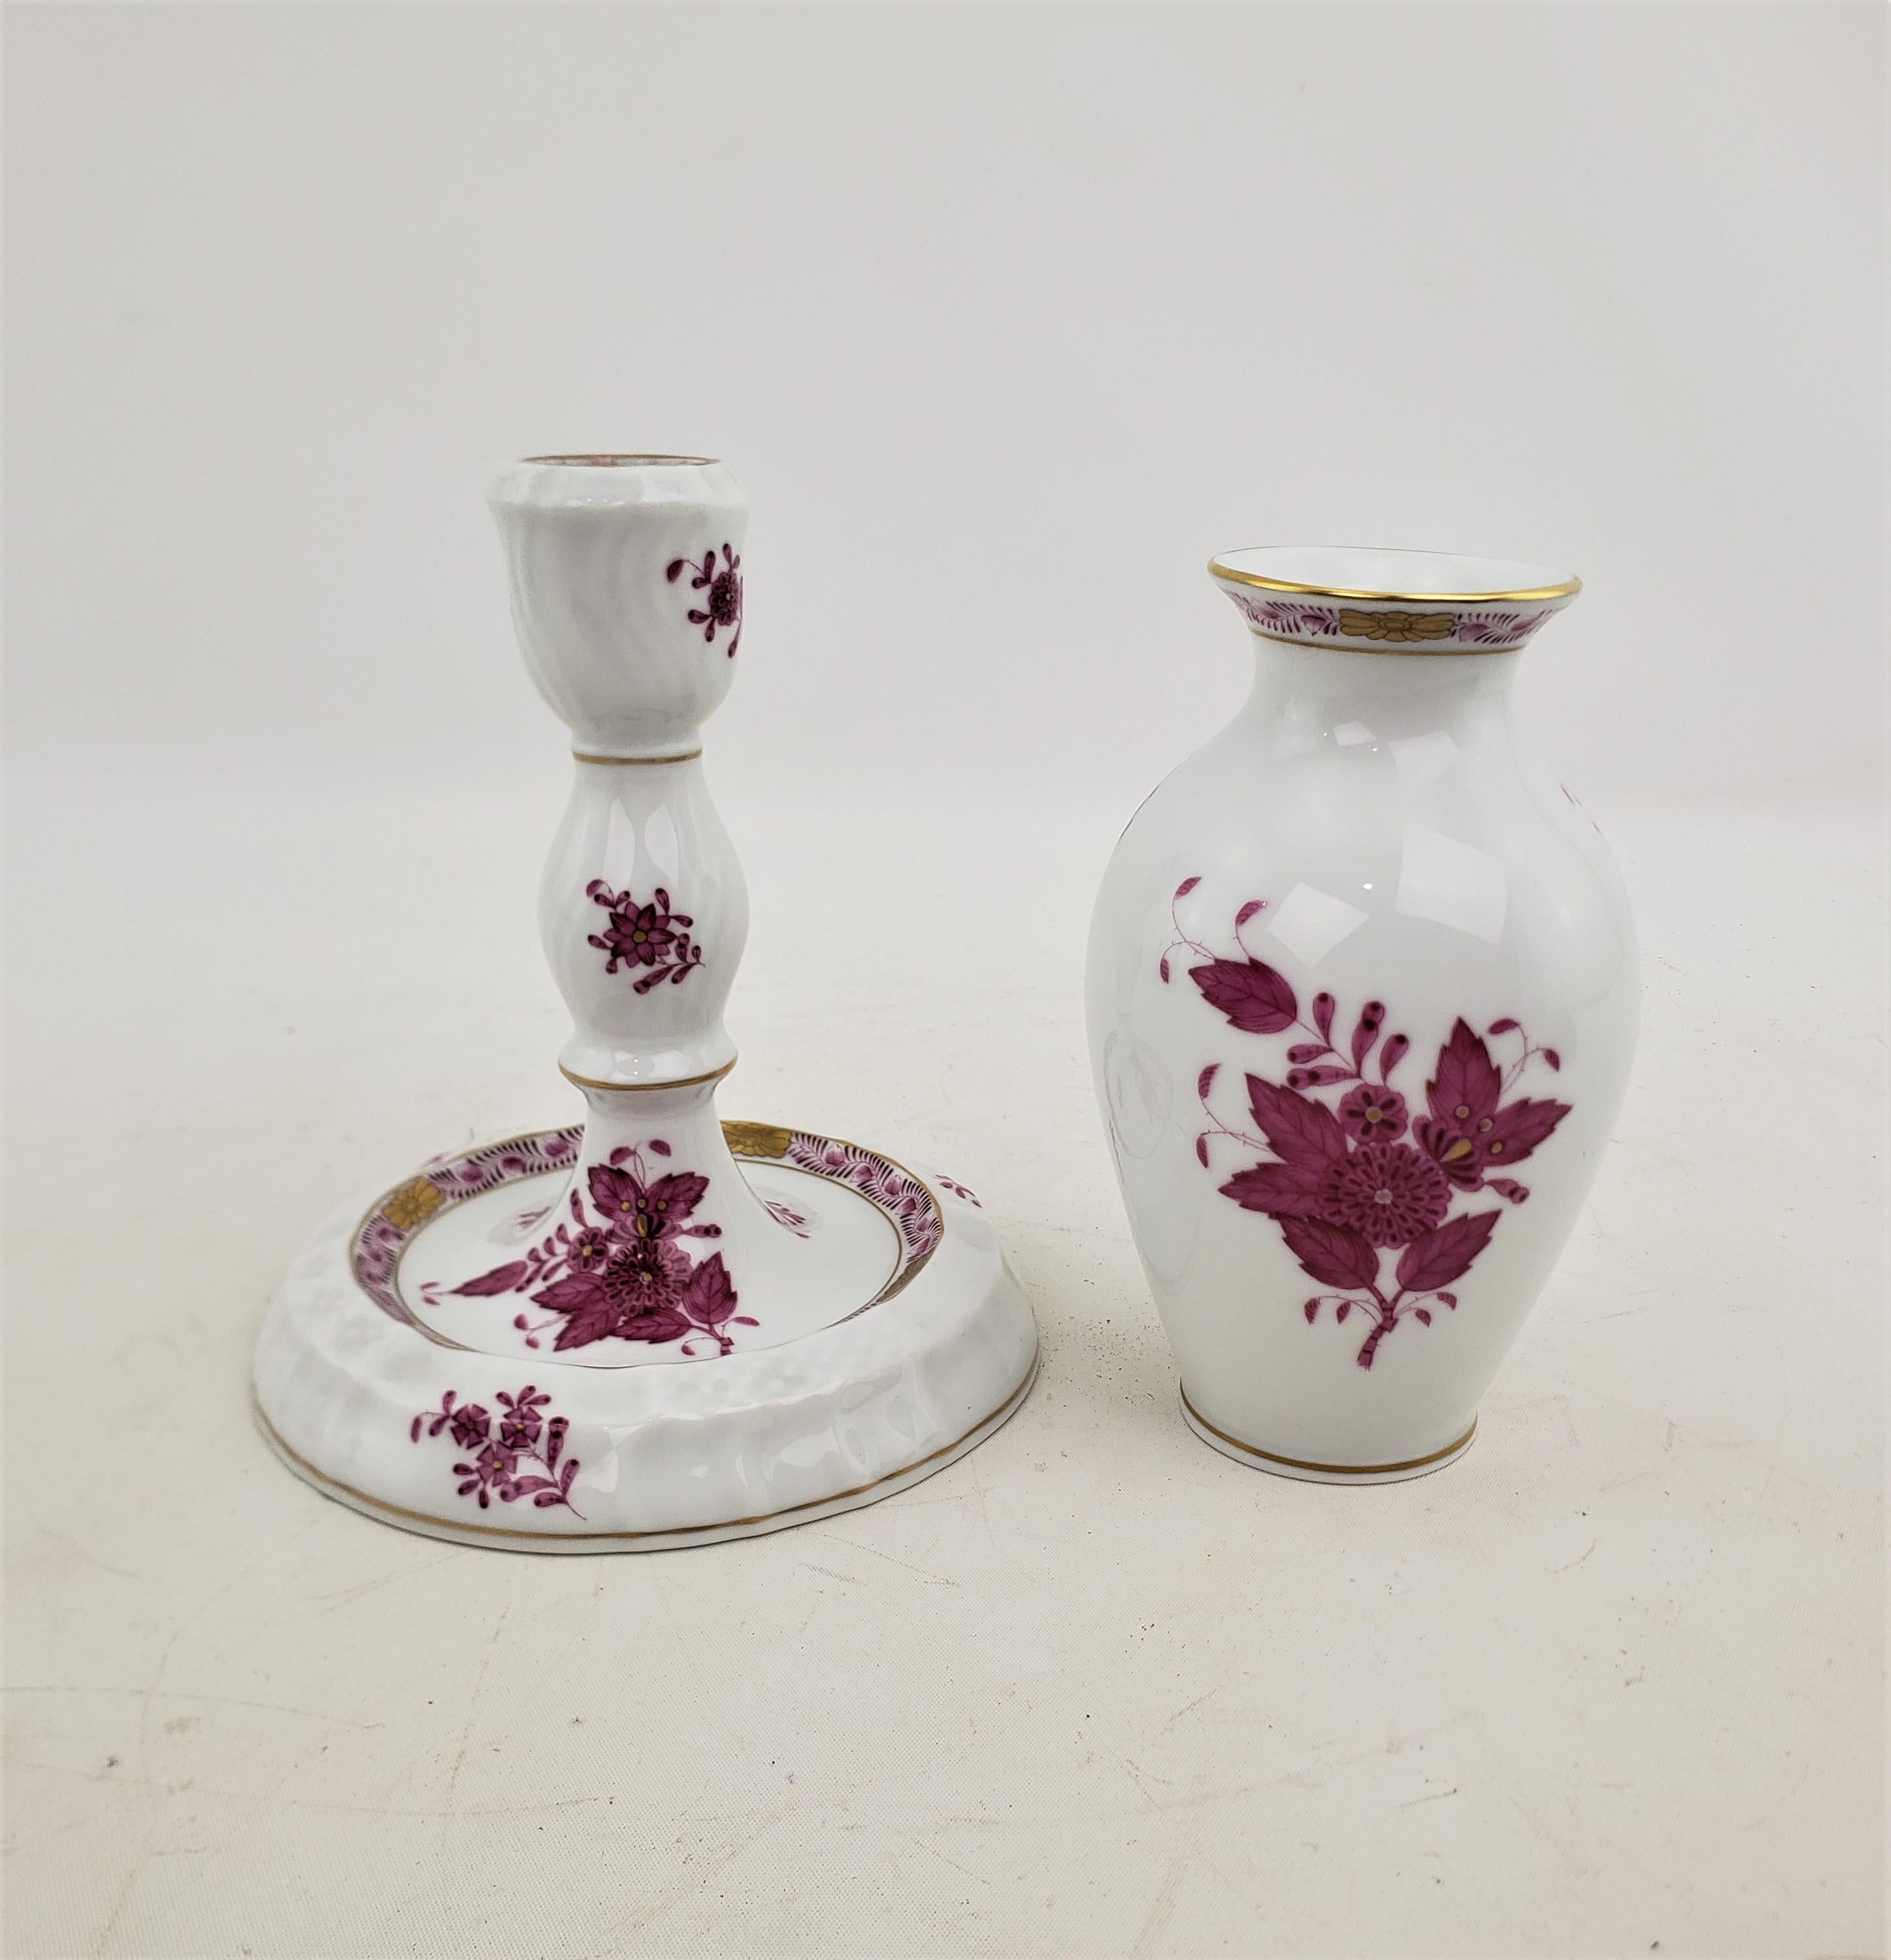 Dieser Kerzenständer und diese Vase wurden von der bekannten ungarischen Manufaktur Herend um 1970 in ihrem charakteristischen Chinaoserie-Stil hergestellt. Das Paar besteht aus Porzellan mit handgemaltem Dekor in ihrem chinesischen Bouquet-Muster